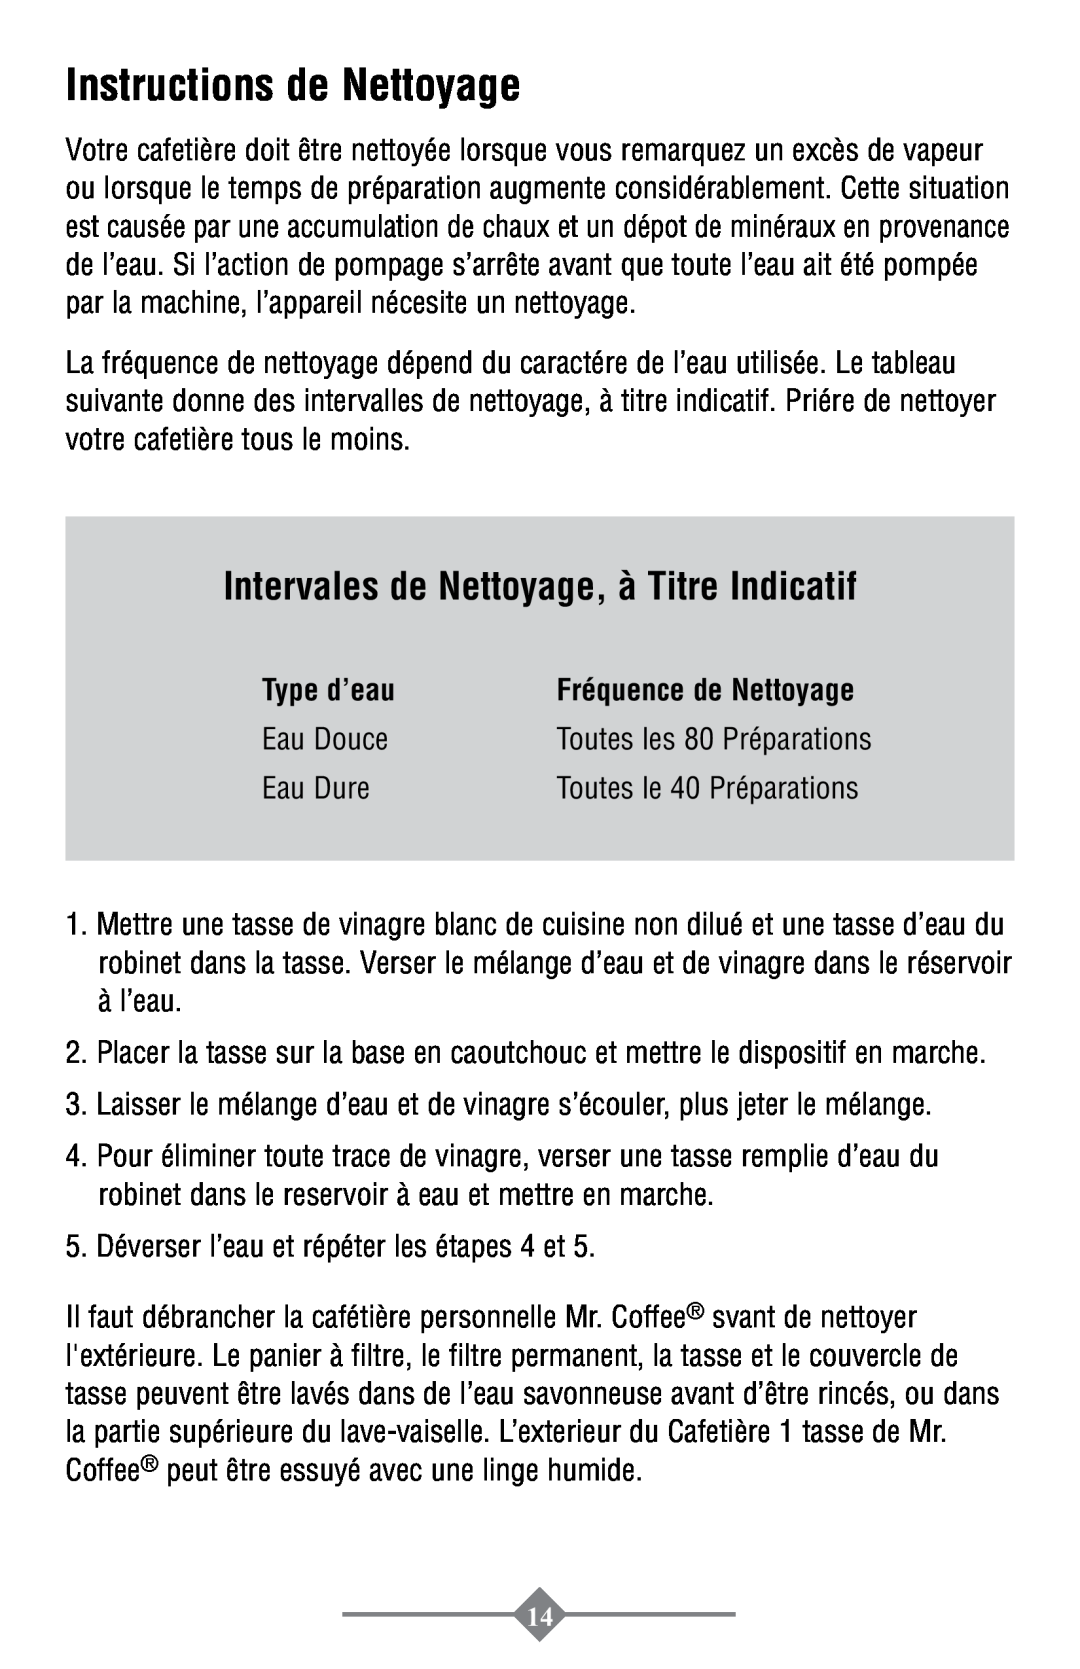 Mr. Coffee PTC13-100 instruction manual Instructions de Nettoyage, Intervales de Nettoyage, à Titre Indicatif, Type d’eau 